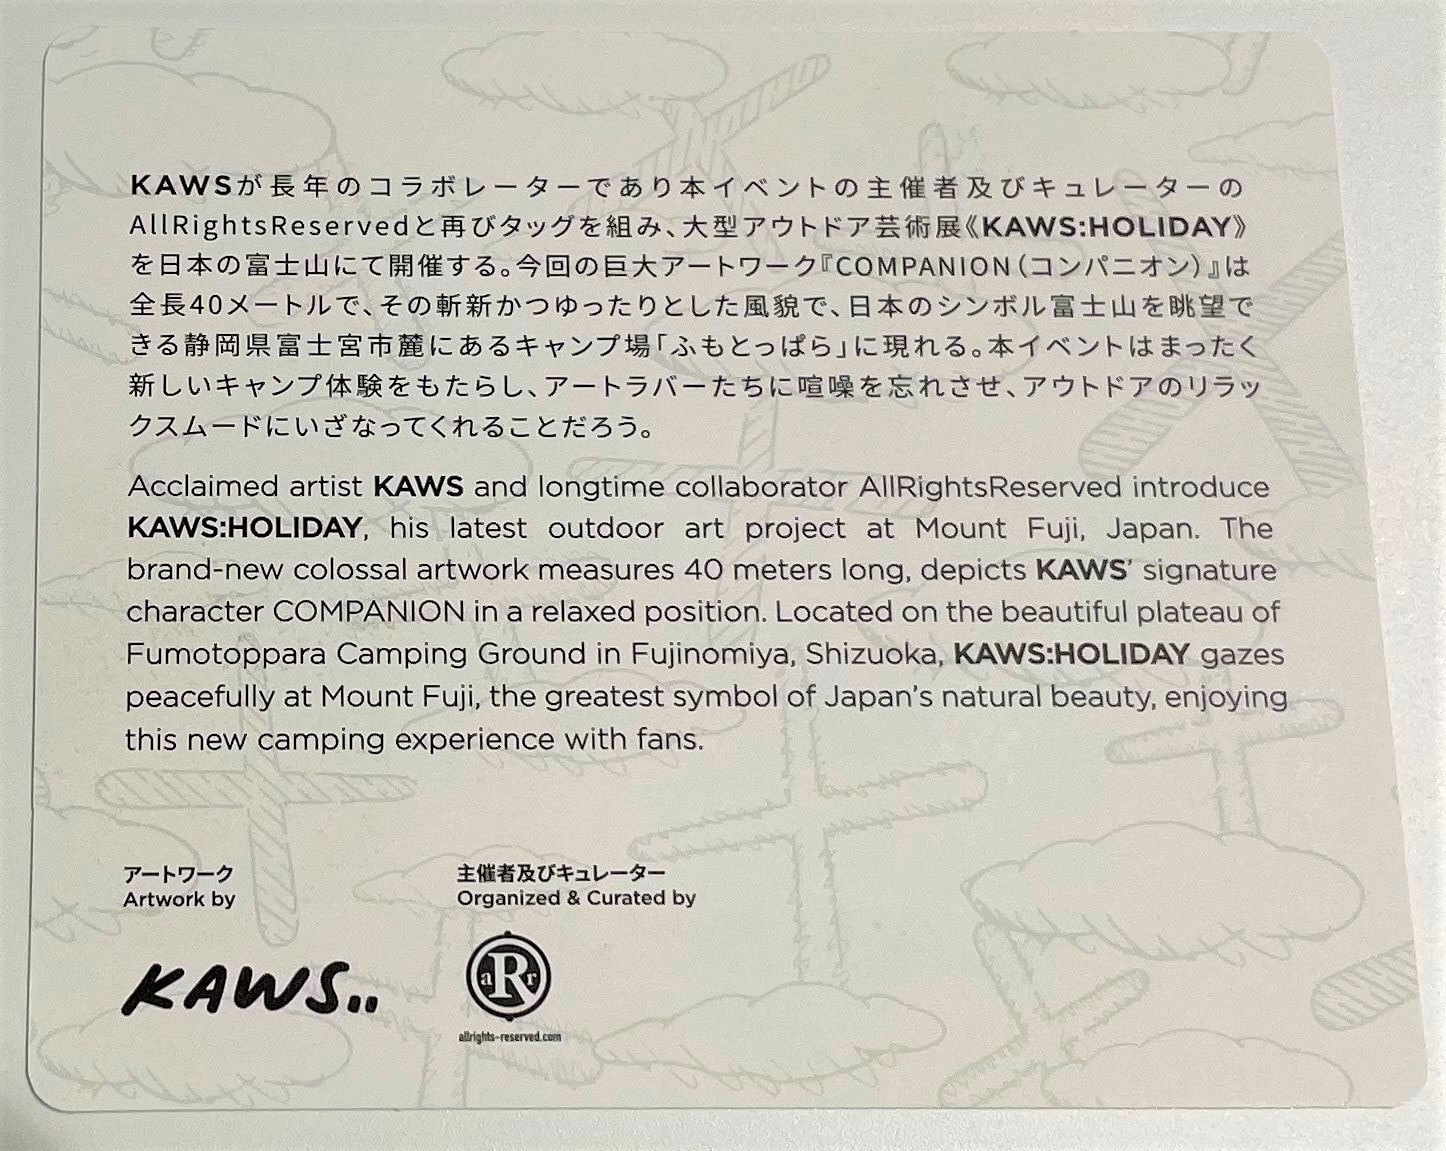 KAWS: HOLIDAY JAPAN フィギュア (Brown)